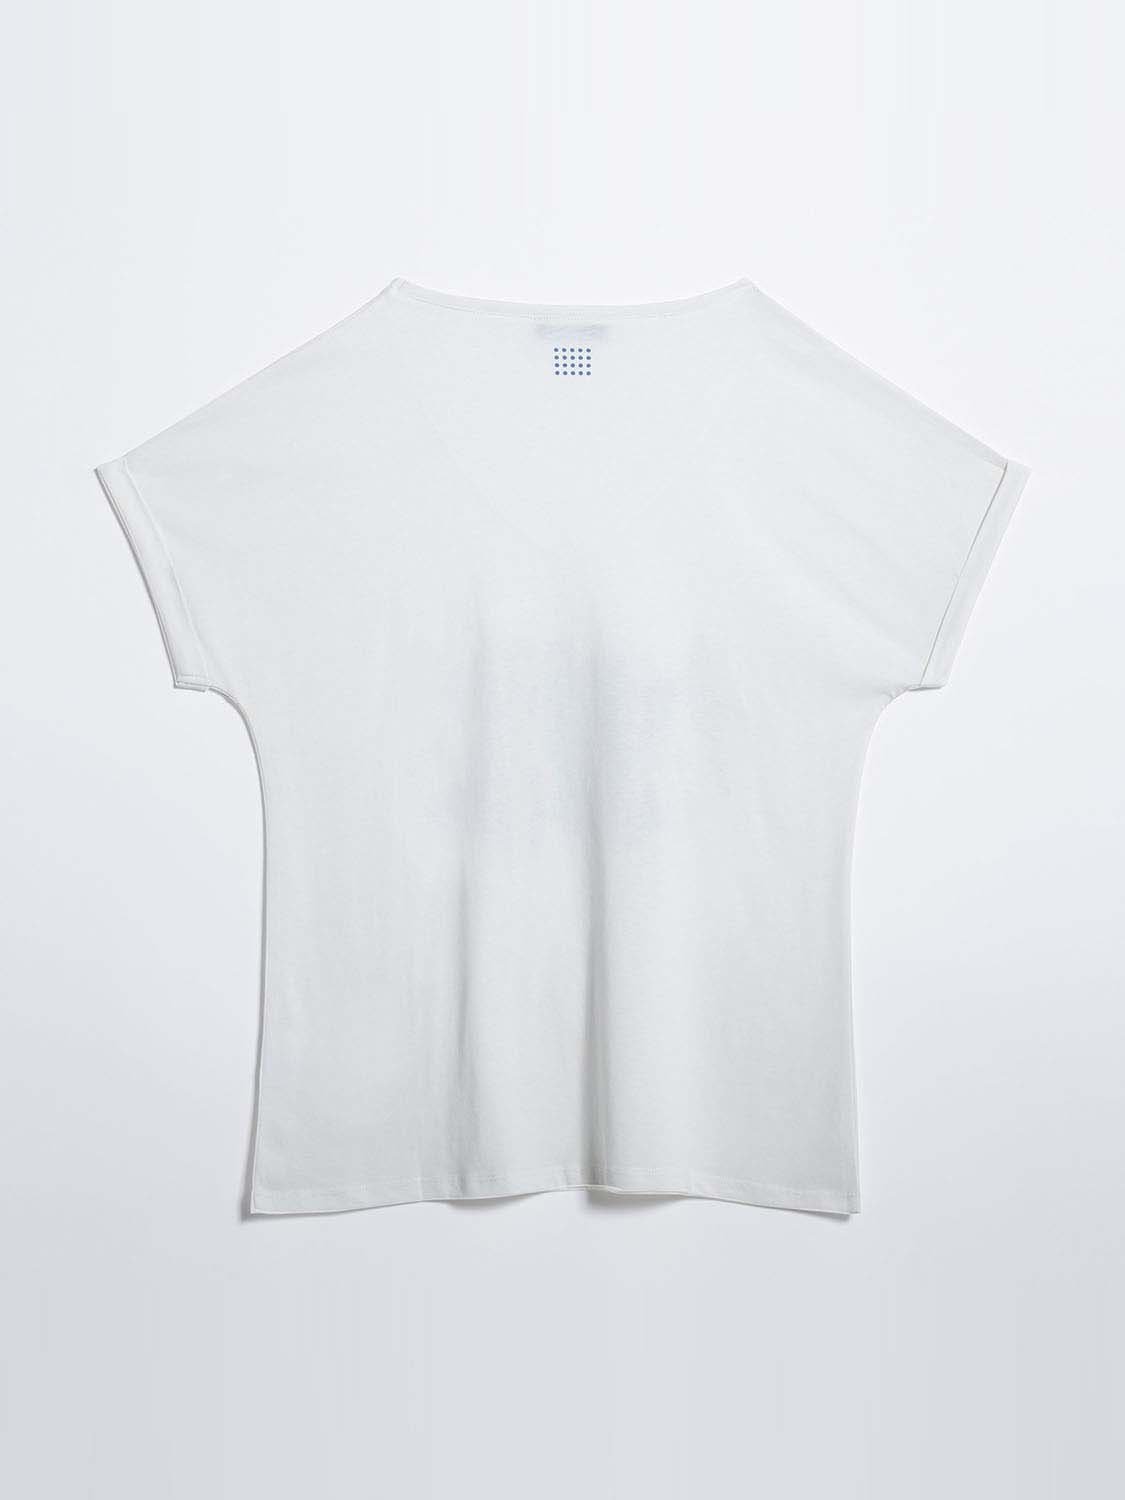 Tee Shirt Femme Print Exclusif Coton Biologique Arctique